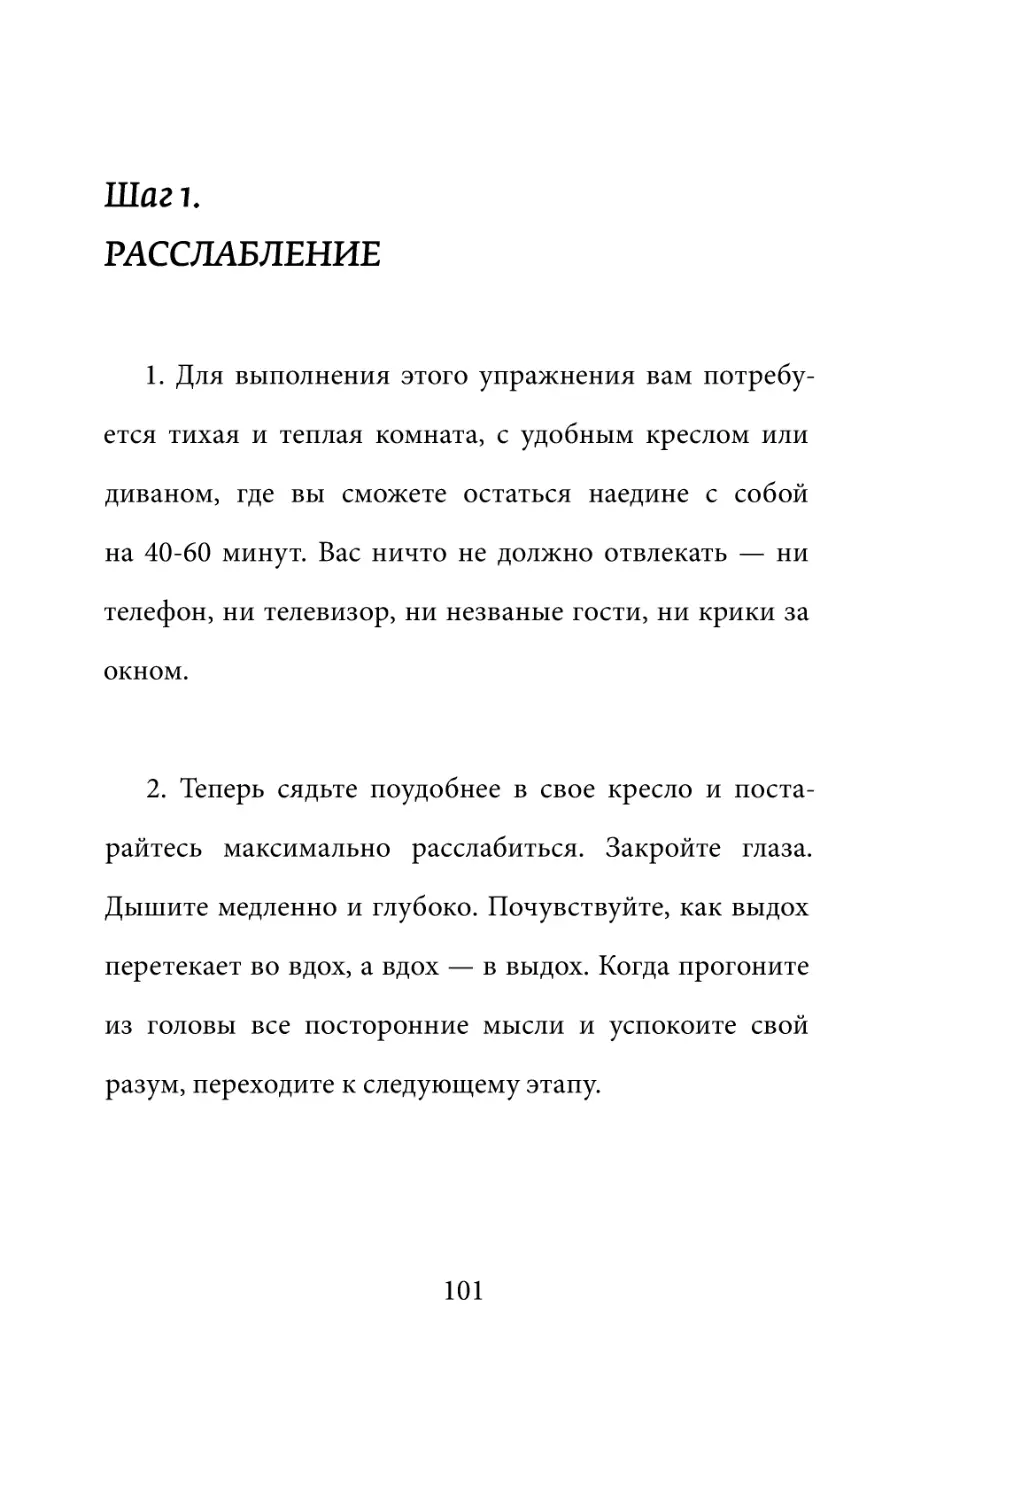 Sergey_Filippov_Dnevnik_samorazvitia_Evolyutsia_Vnutrennego_Sostoyania_101.pdf (p.101)